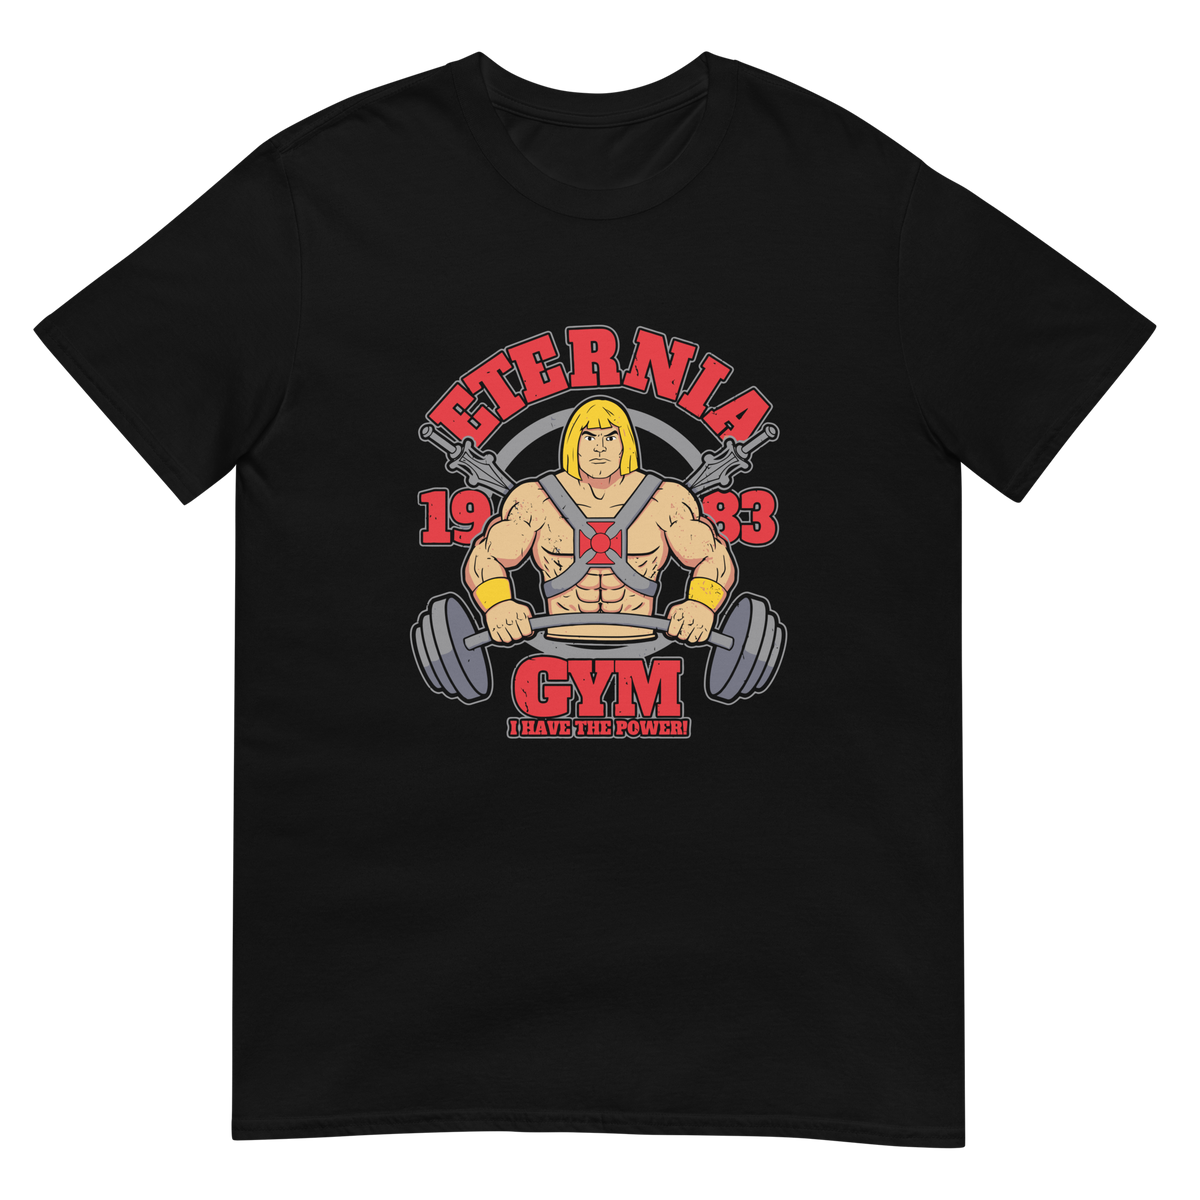 Nome do produto: Camiseta He-Man Eternia Gym 1983 